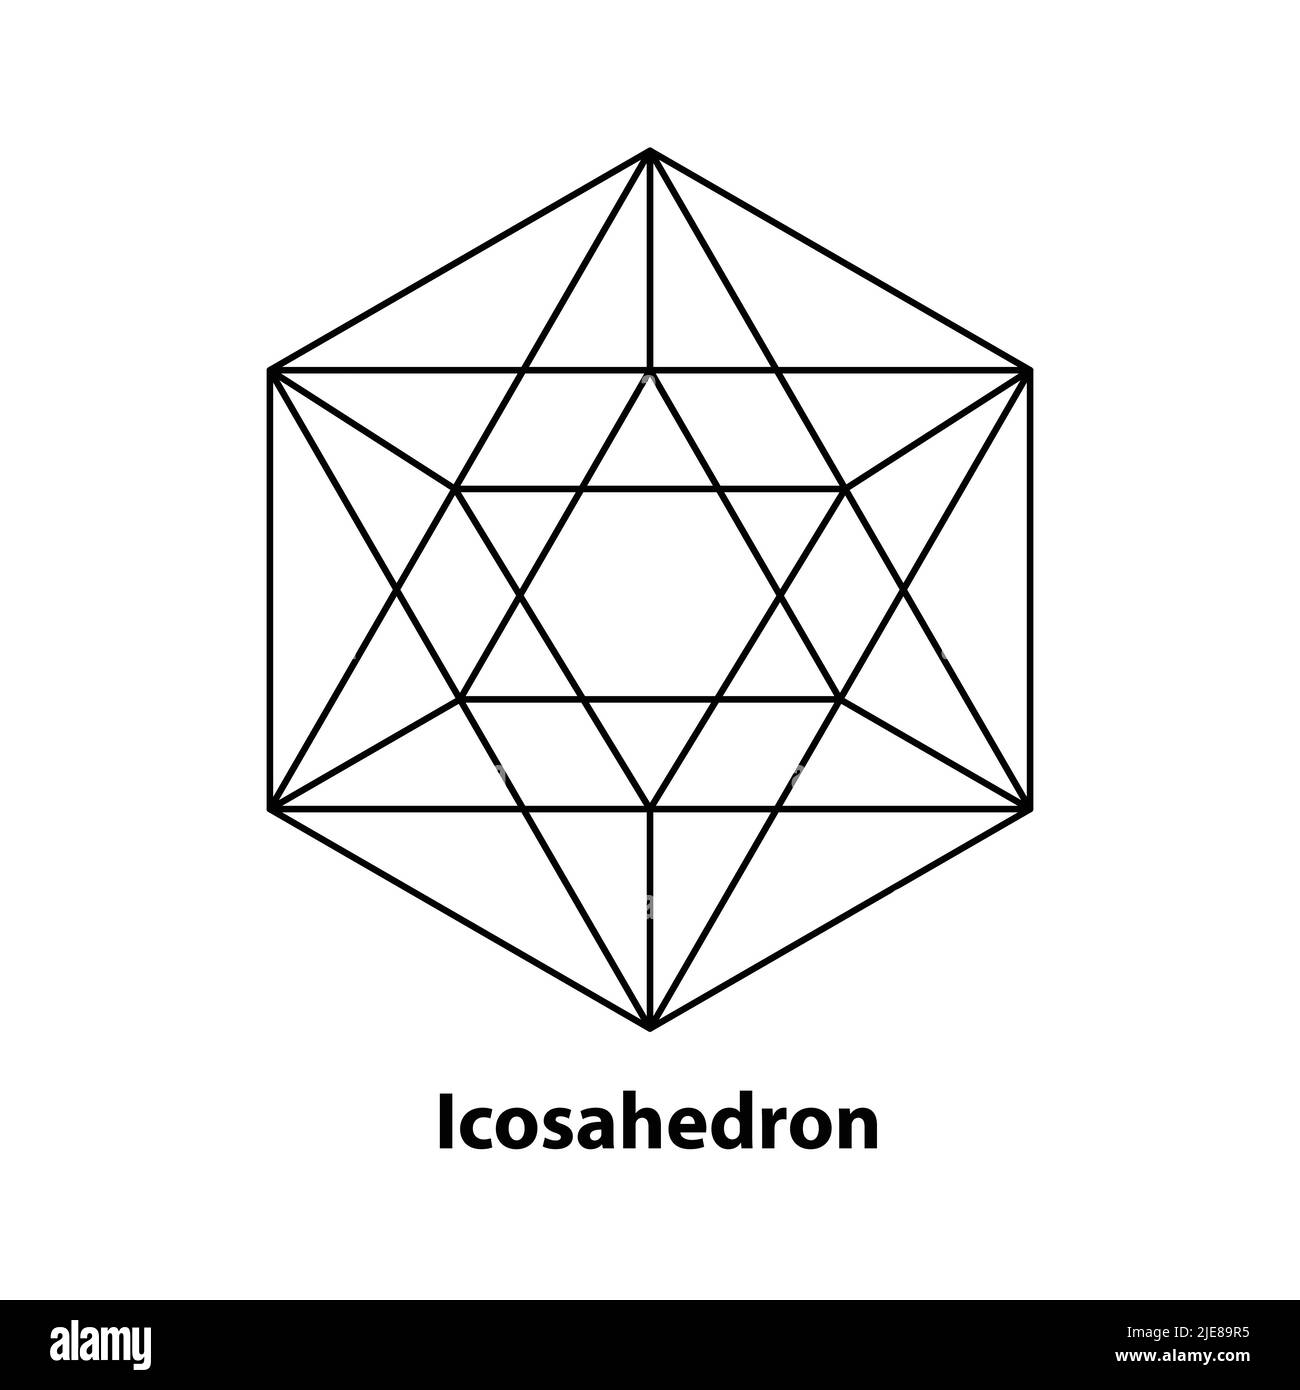 Dessin au trait d'icosaèdre, géométrie sacrée, solide platonique, logo, illustration vectorielle Illustration de Vecteur